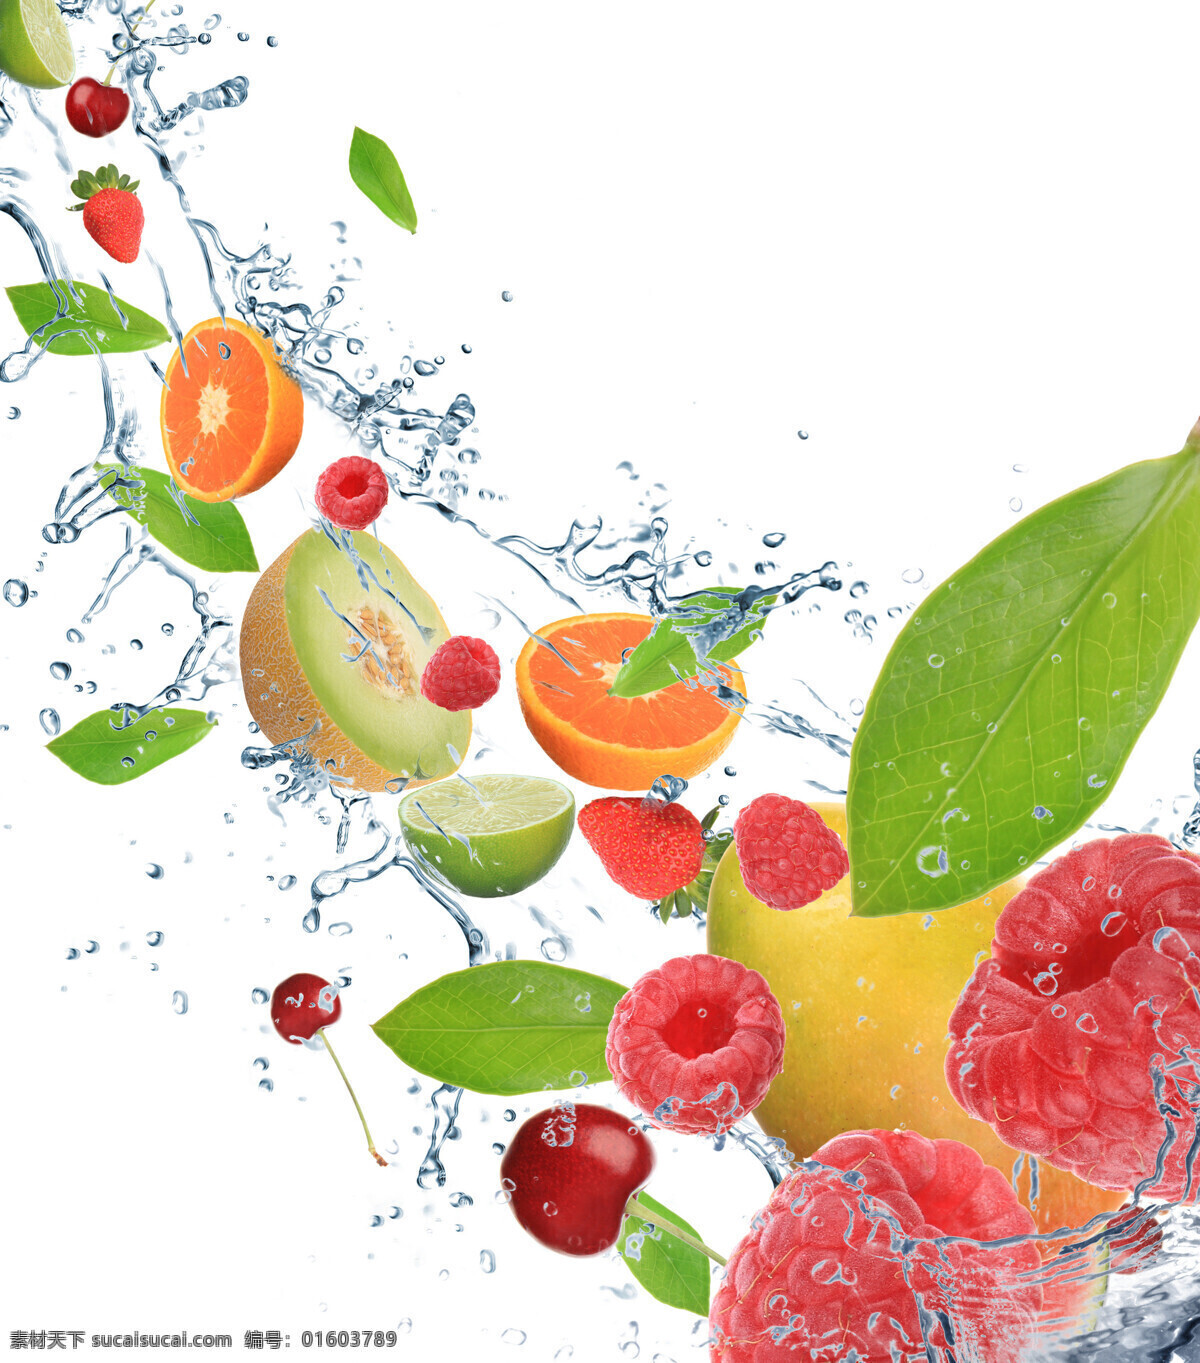 水果背景素材 橙子 草莓 猕猴桃 水 水珠 叶子 绿叶 水果 水果背景 水果素材 水果蔬菜 餐饮美食 白色